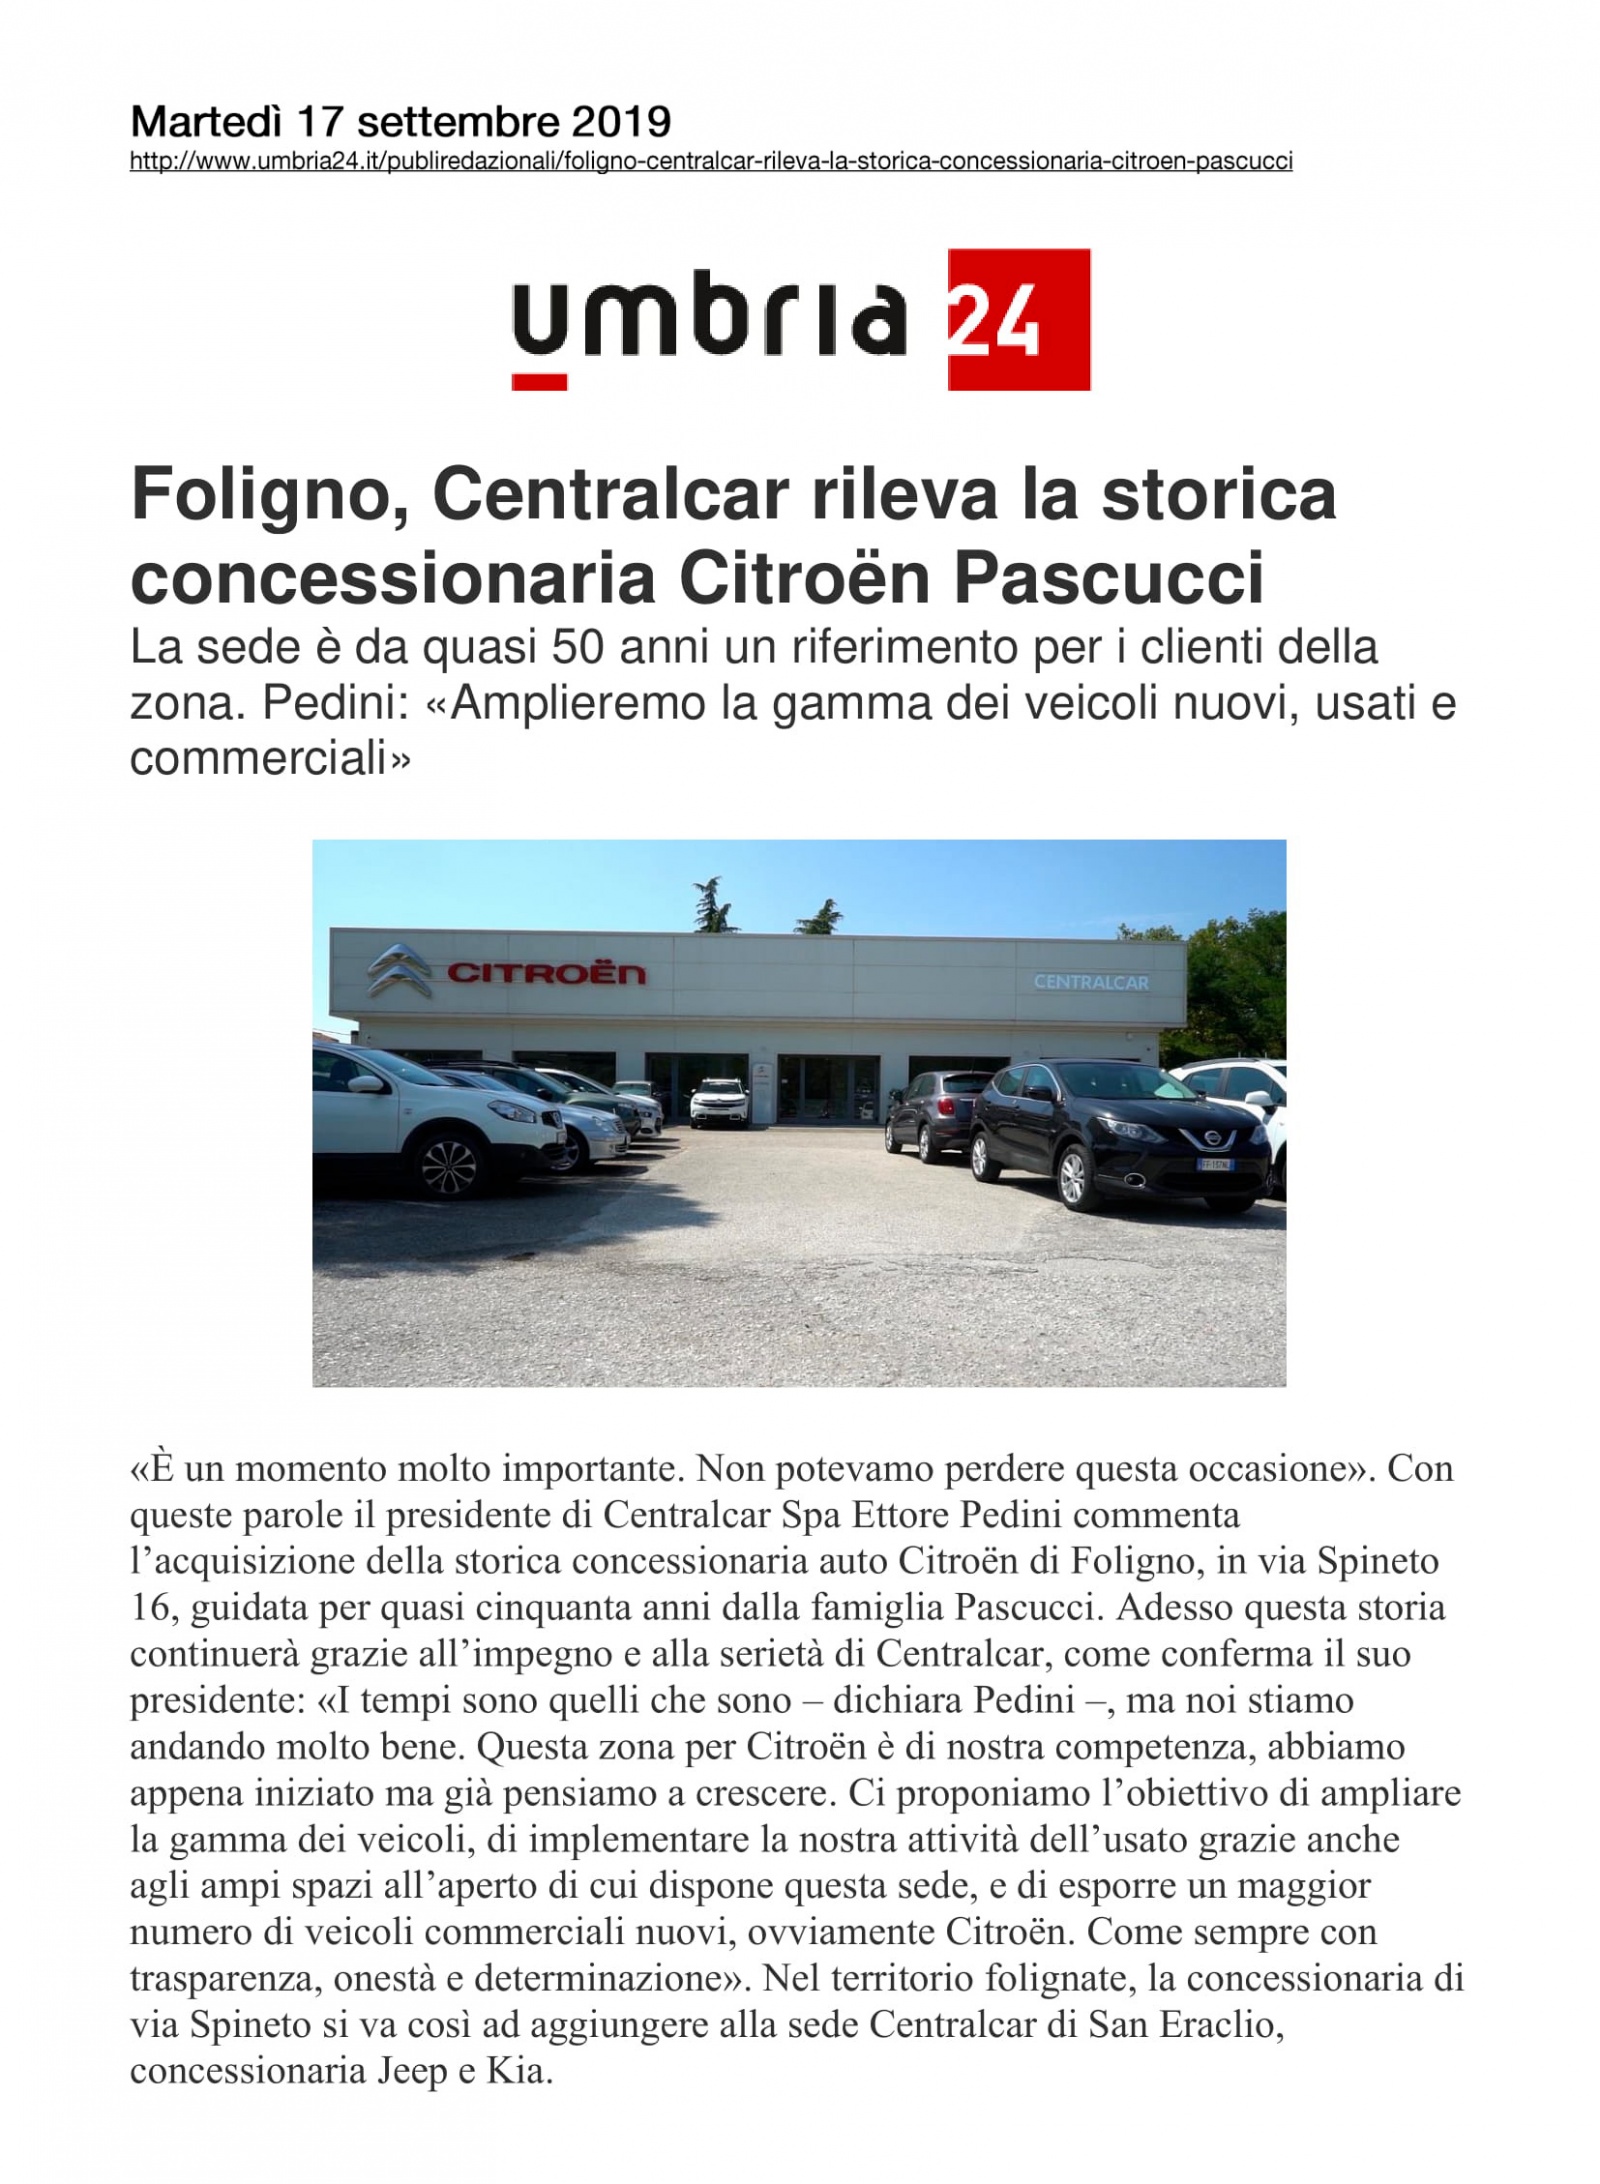 Foligno, Centralcar rileva la storica concessionaria Citroën Pascucci